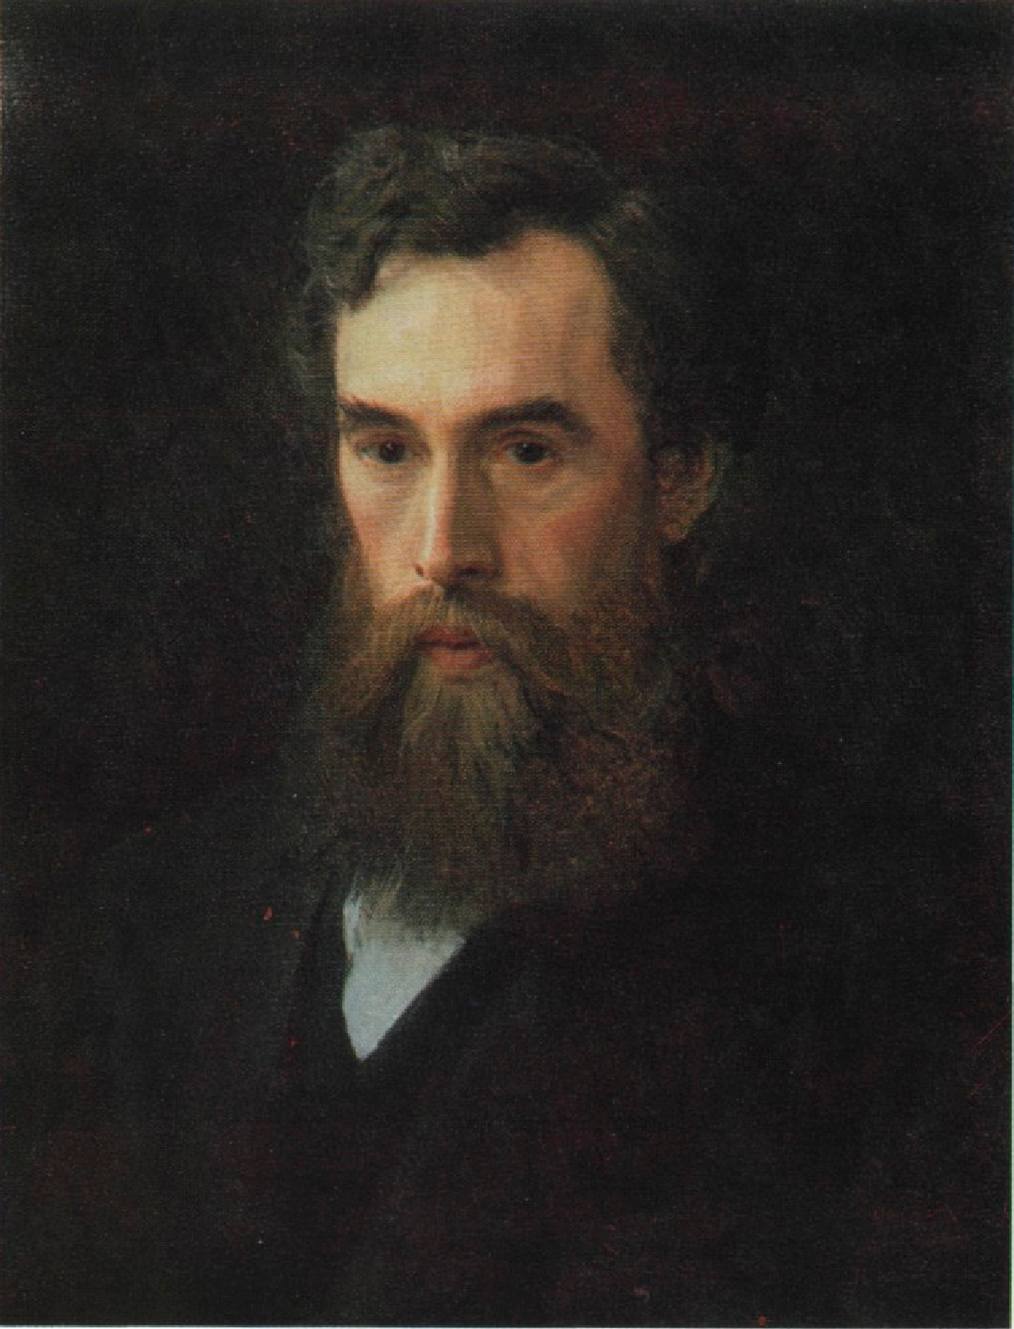 12. Портрет П.М. Третьякова, основателя галереи. 1876